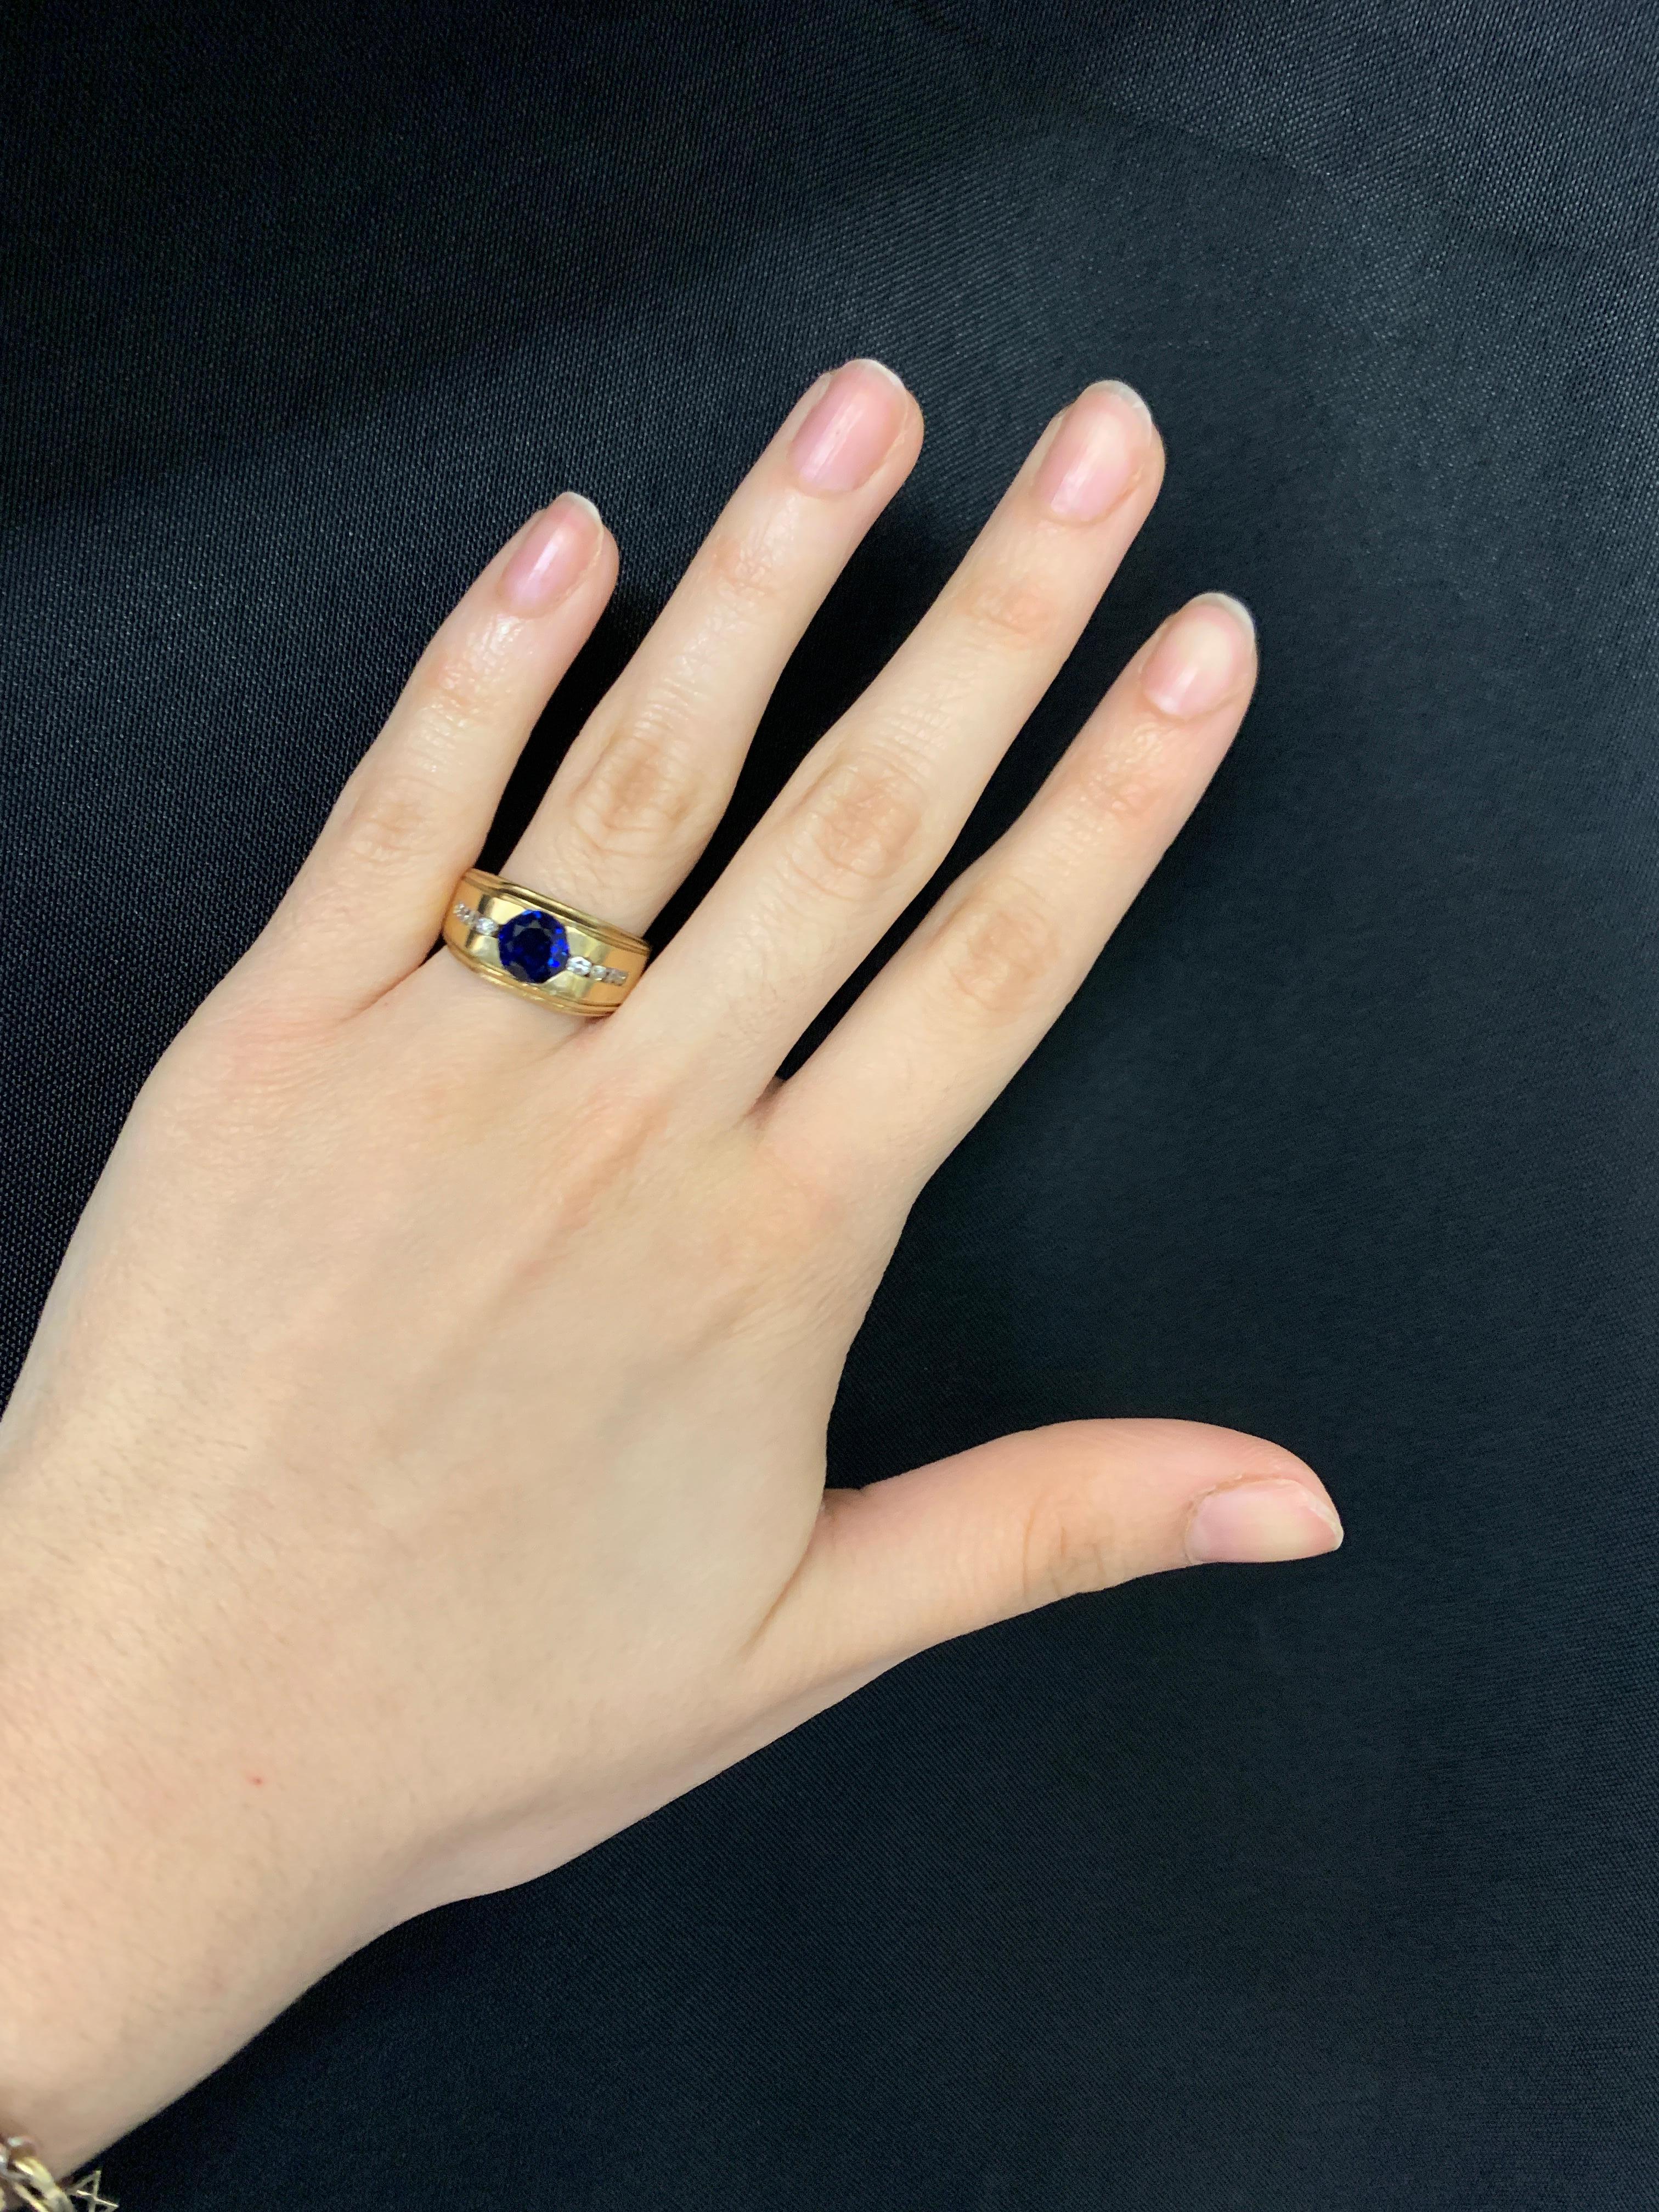 Saphir-Ring für Männer

Schöner Ring aus Gelbgold mit einem runden Saphir in der Mitte und vier Diamanten im Rundschliff auf jeder Seite.  

Metalltyp: 14 Karat Gelbgold
Ungefähres Gewicht des Saphirs: 1 Karat
Ringgröße: 7
Kostenfrei anpassbar 
